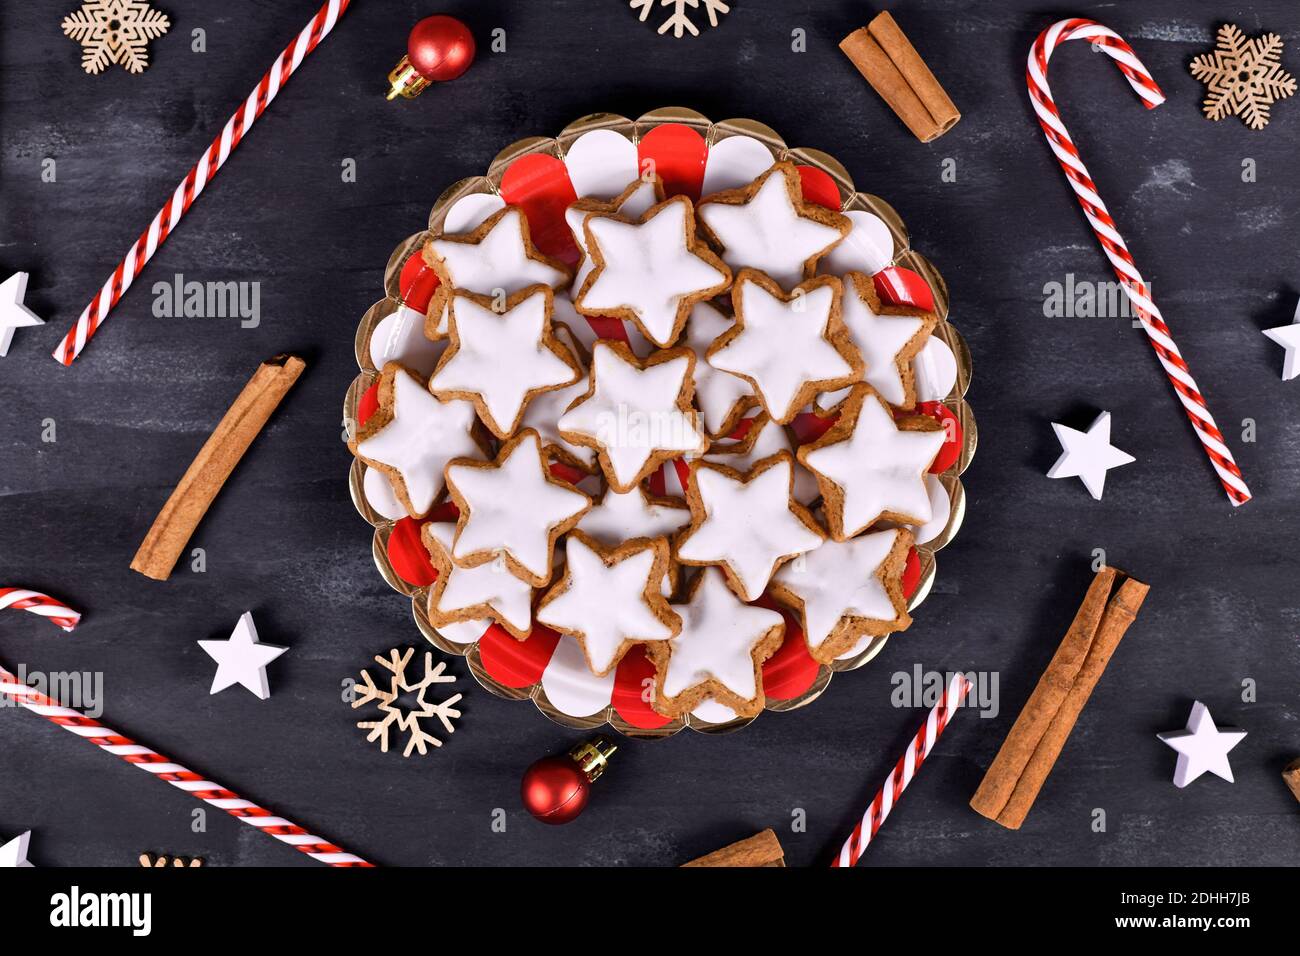 Deutsche sternförmige glasierte Zimt Weihnachtsplätzchen genannt 'Zimtsterne' auf Gestreifter Teller, umgeben von Zimtstangen und saisonaler Dekoration Stockfoto